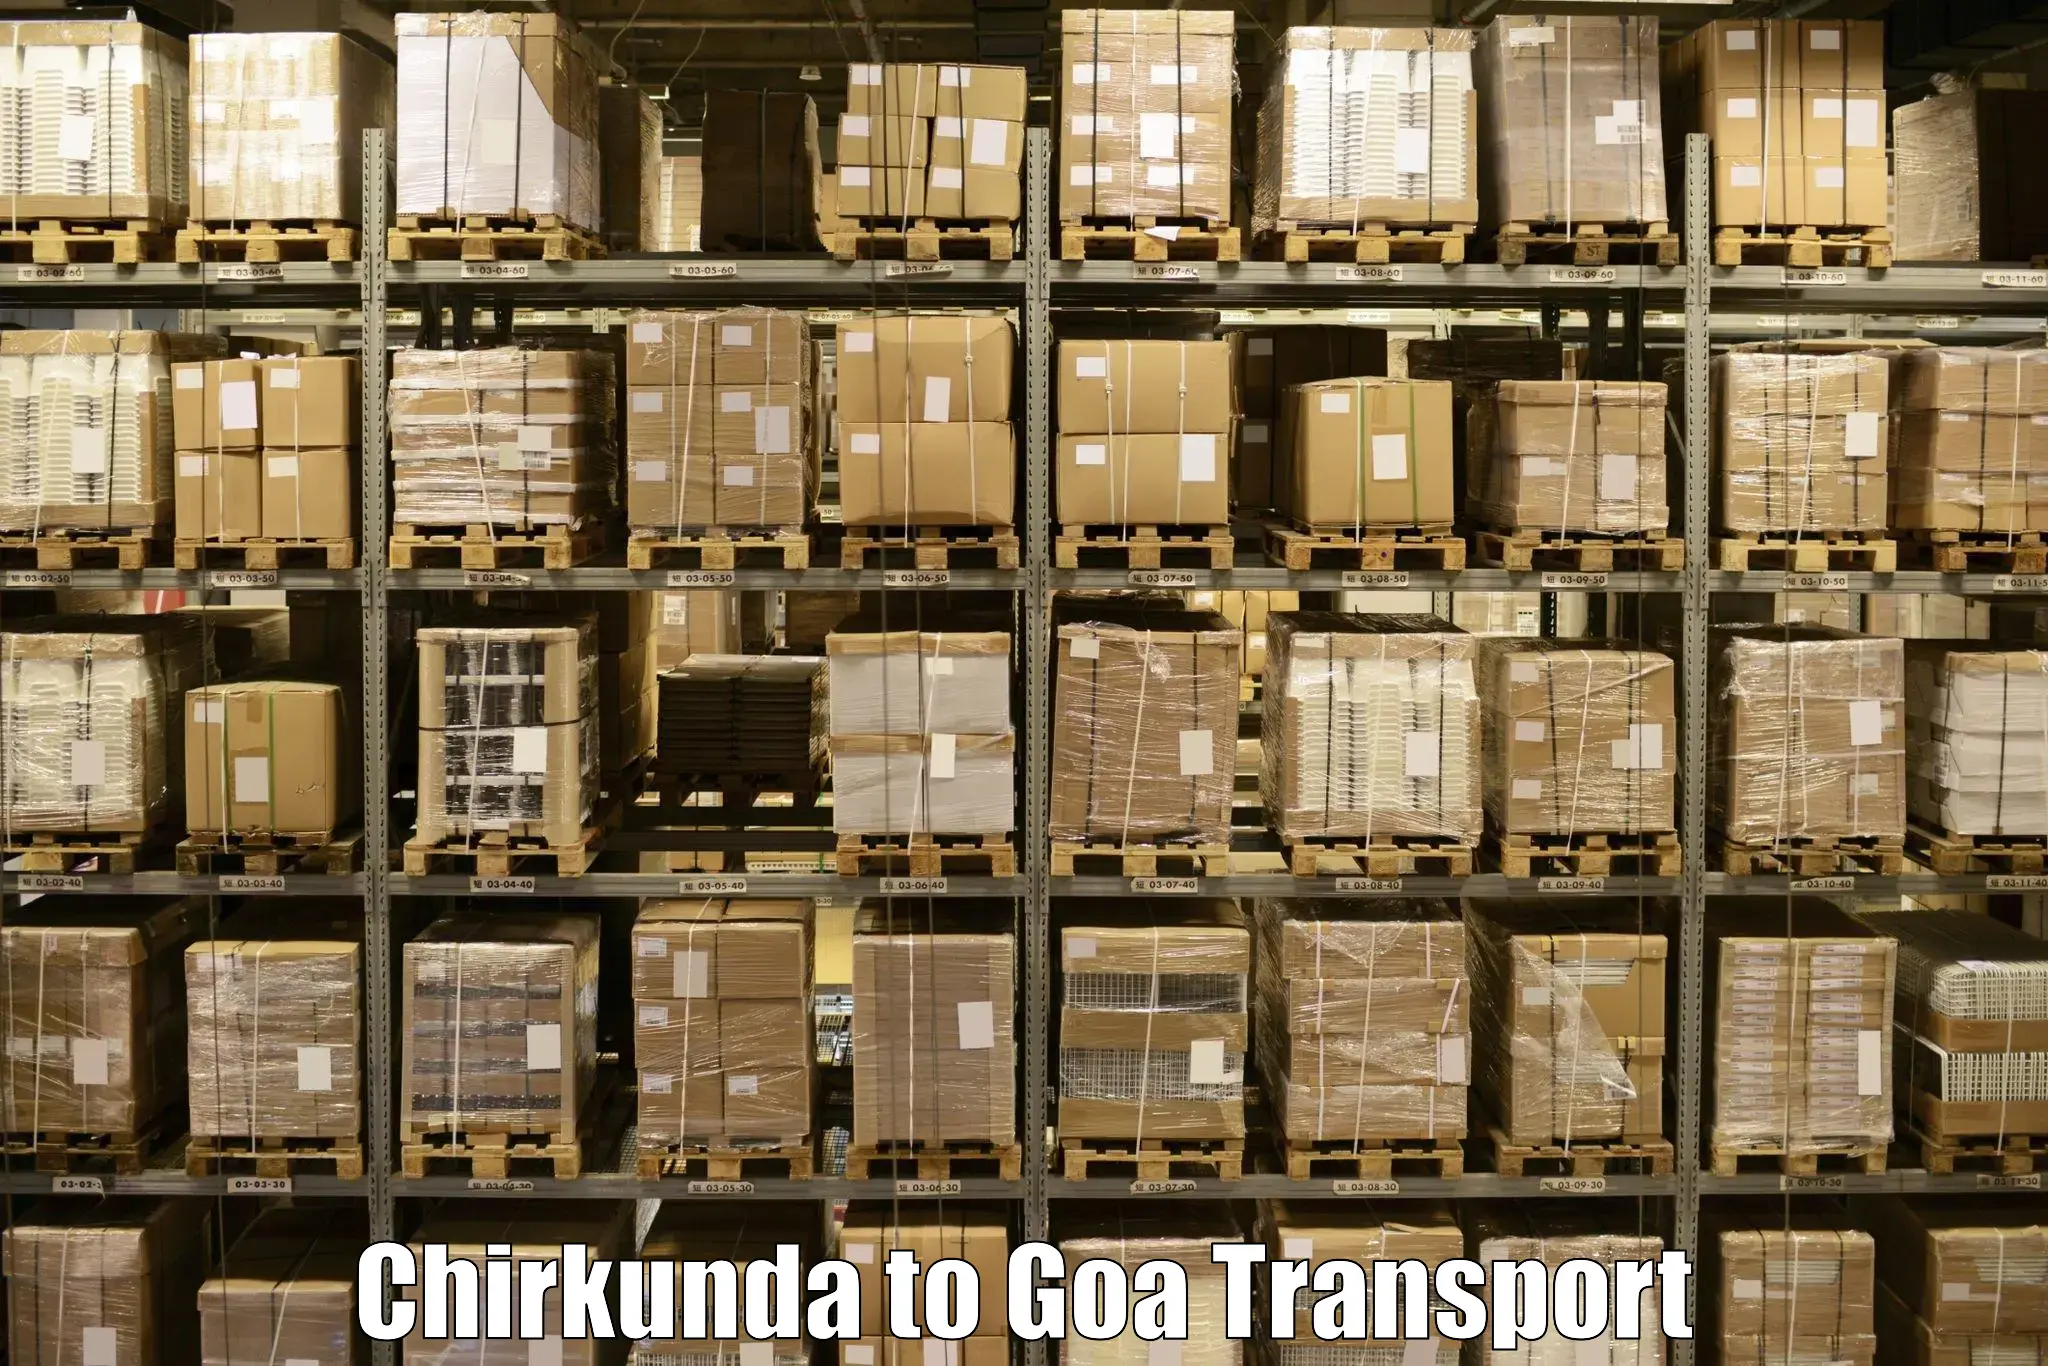 Daily transport service Chirkunda to Mormugao Port